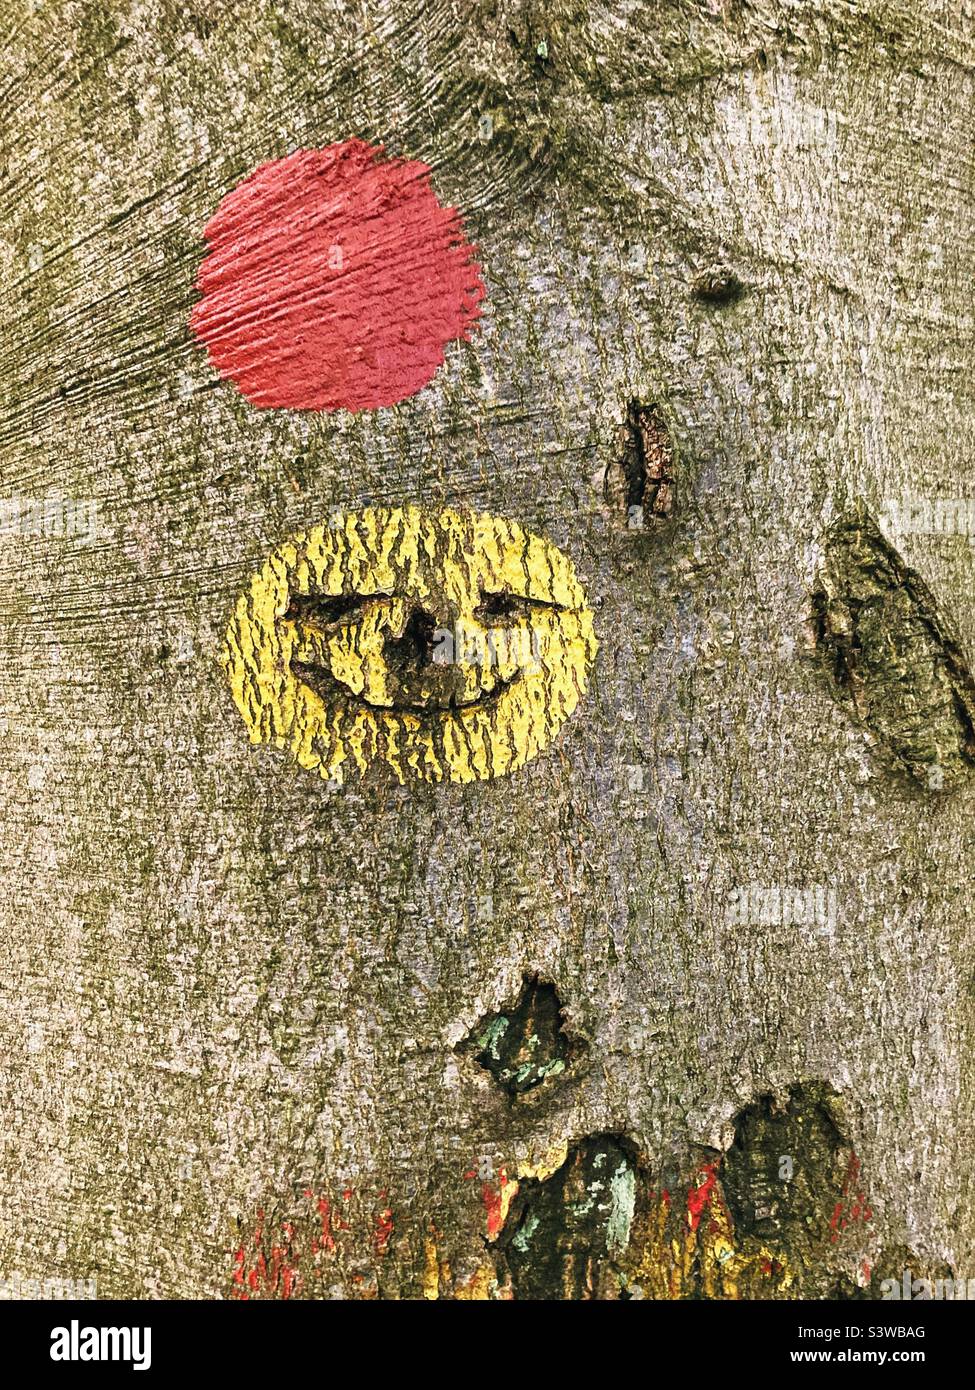 Ein gelber Punkt auf einem Baum mit Mund, Augen und einer darin eingemeißelten Nase, der einem grotesken Smiley Emoji ähnelt, ein roter Punkt, der auf einen Wanderweg darüber hinweist Stockfoto